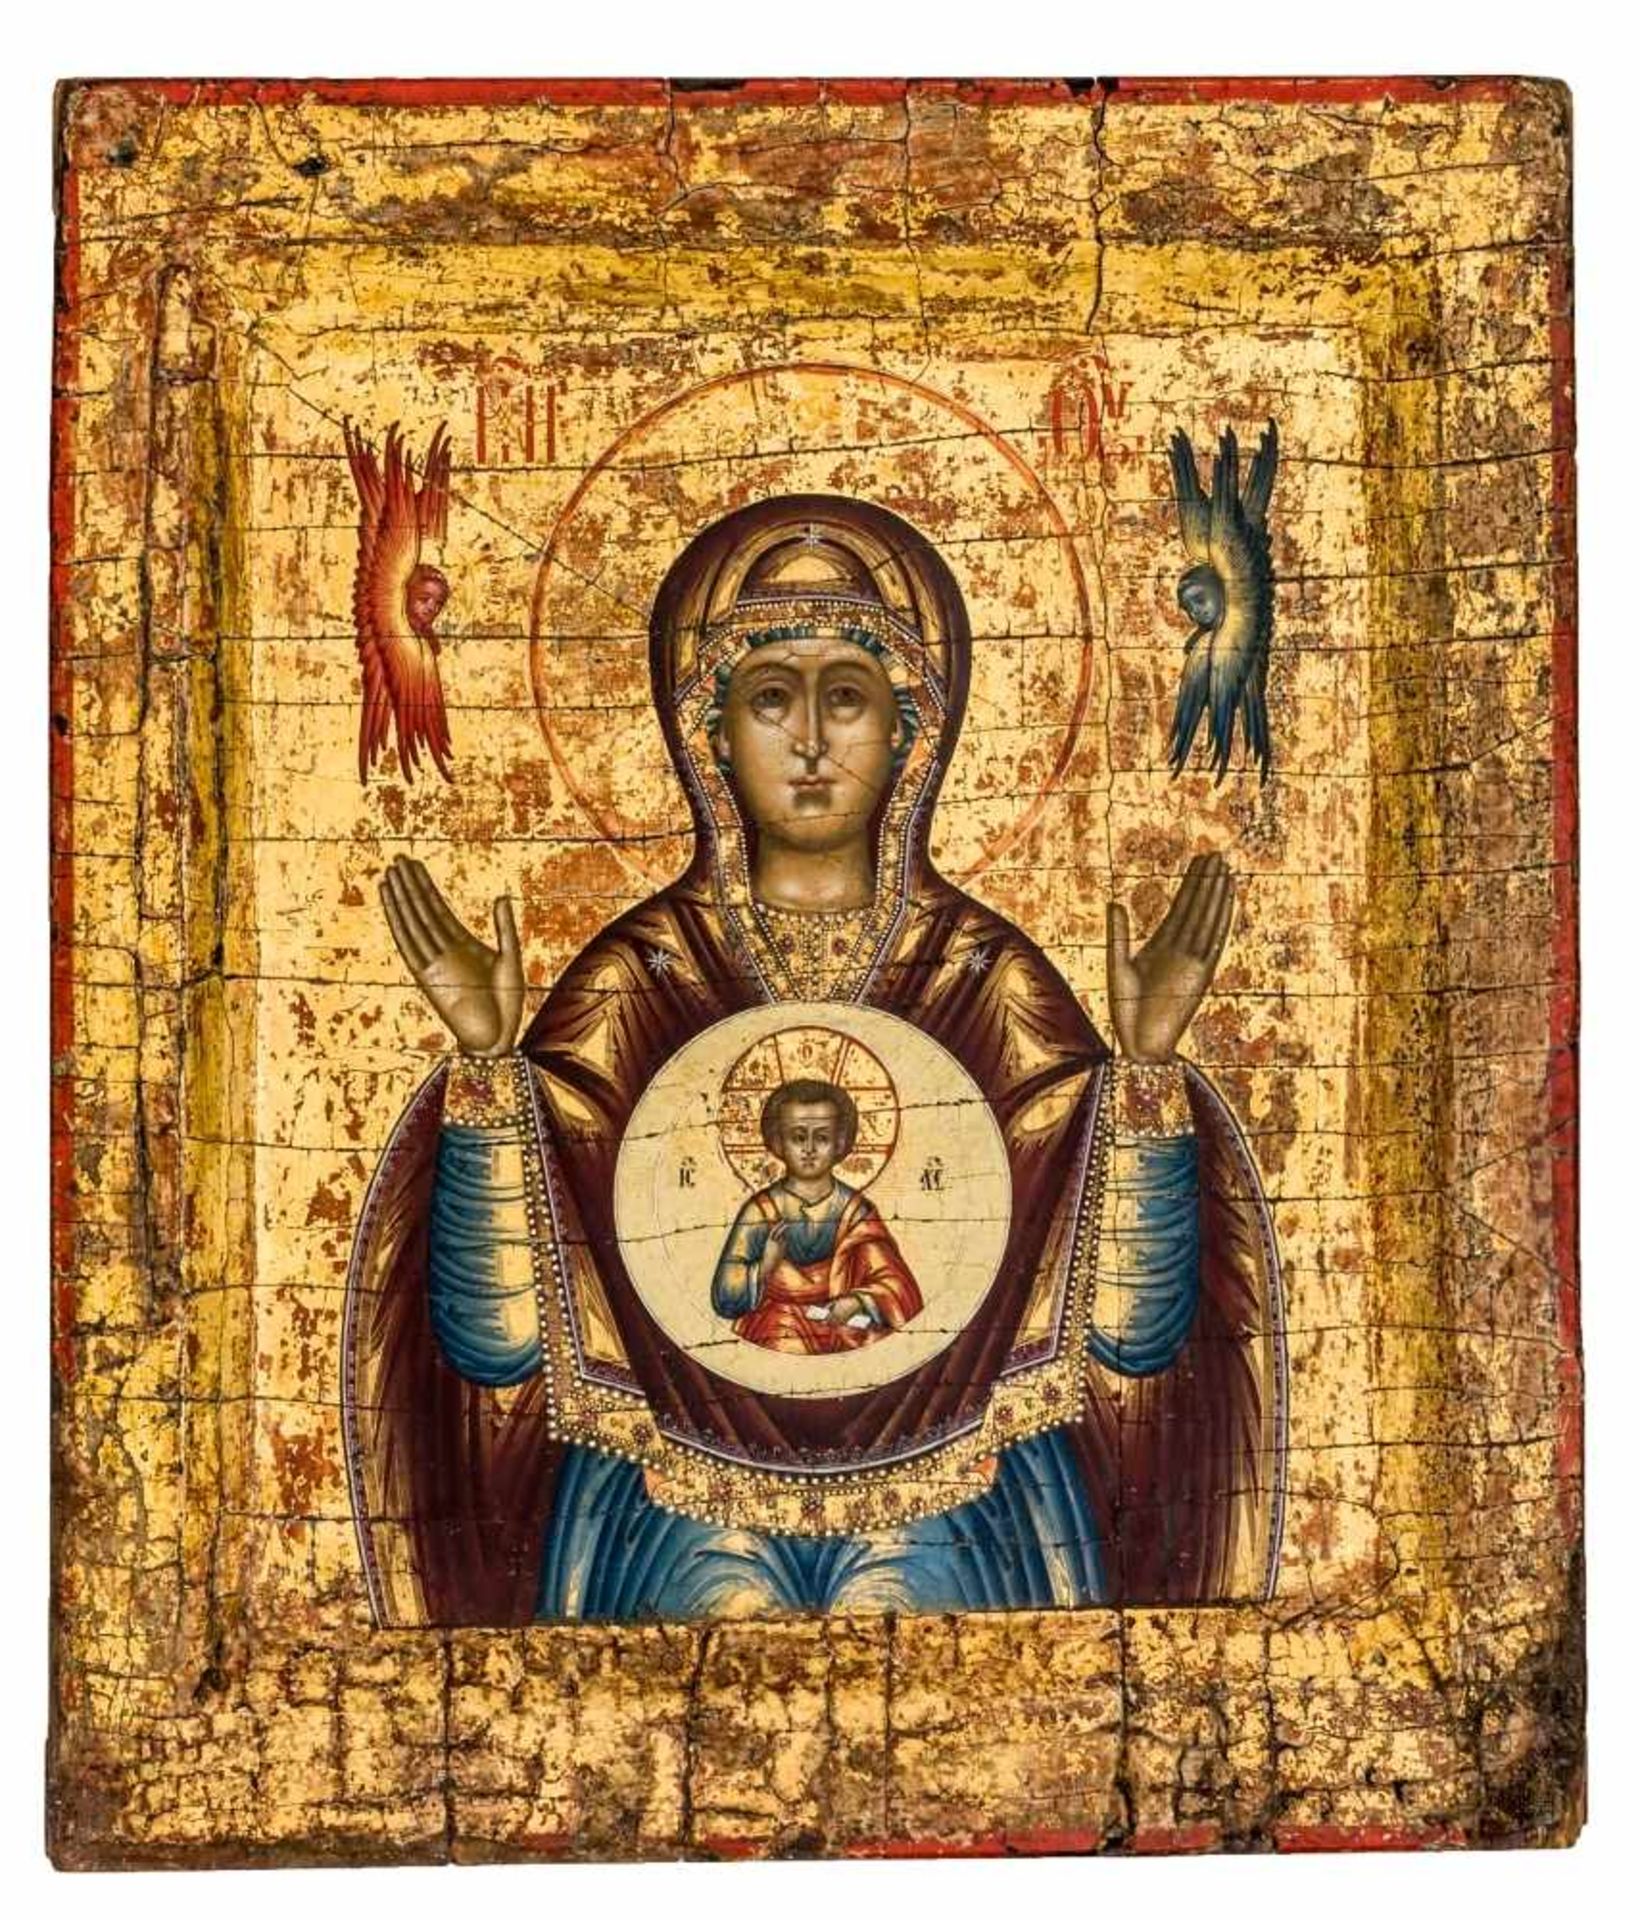 Hl. Erzengel Michael und Gottesmutter des ZeichensDoppelseitige russische Ikone, um 180041 x 34,5 - Bild 2 aus 2